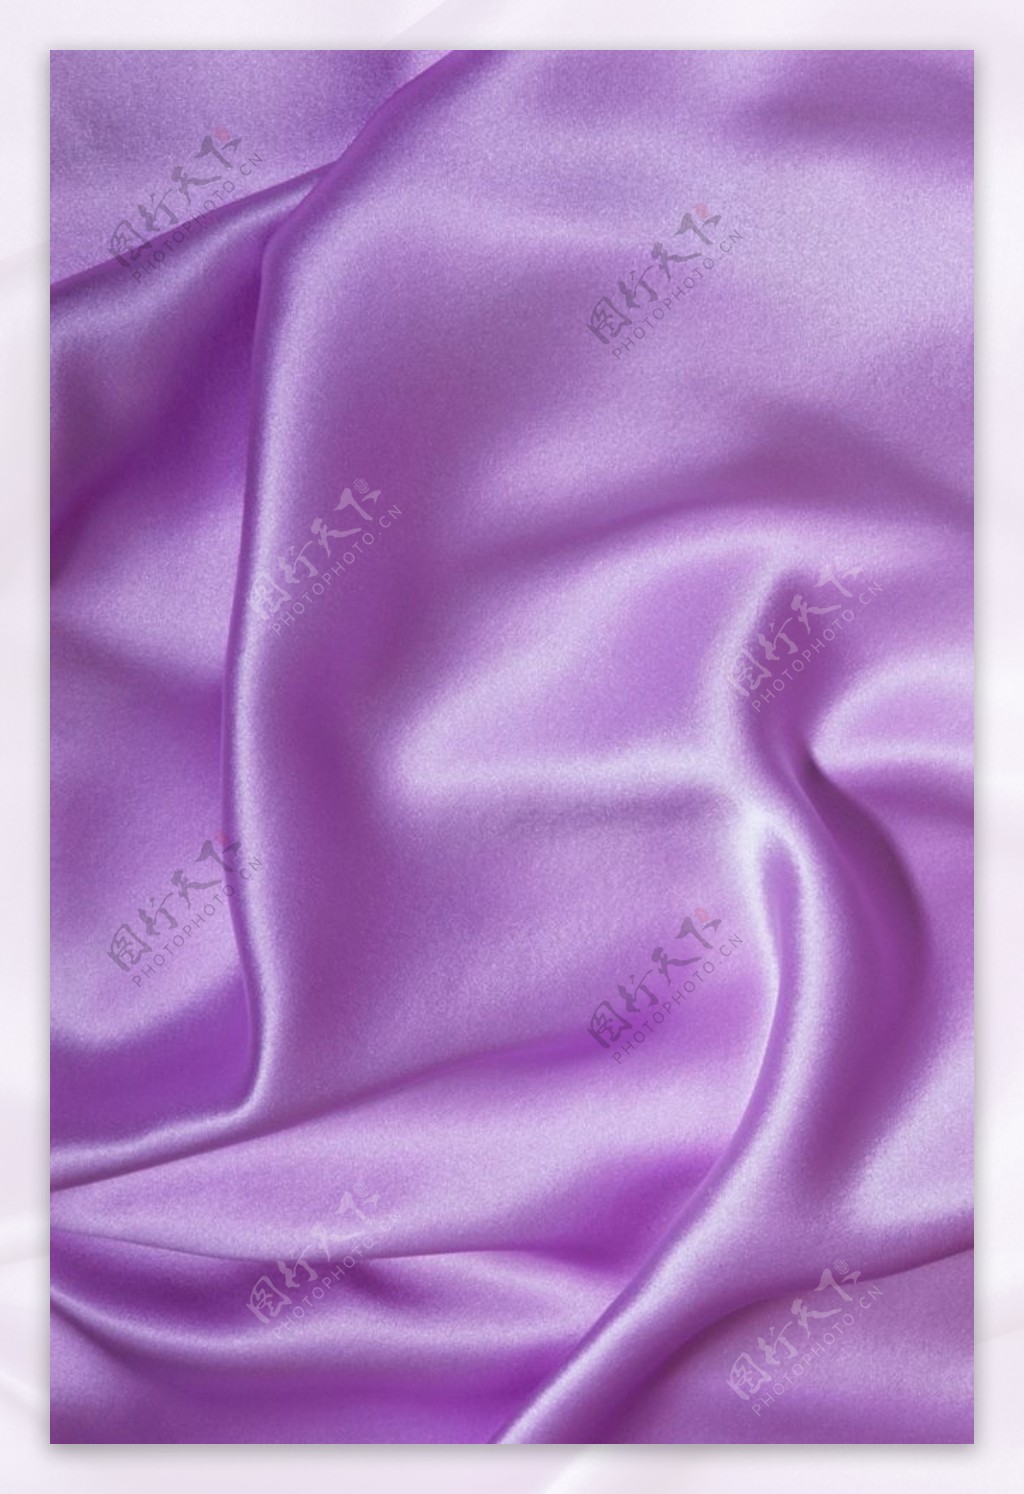 布纹艳紫色布纹